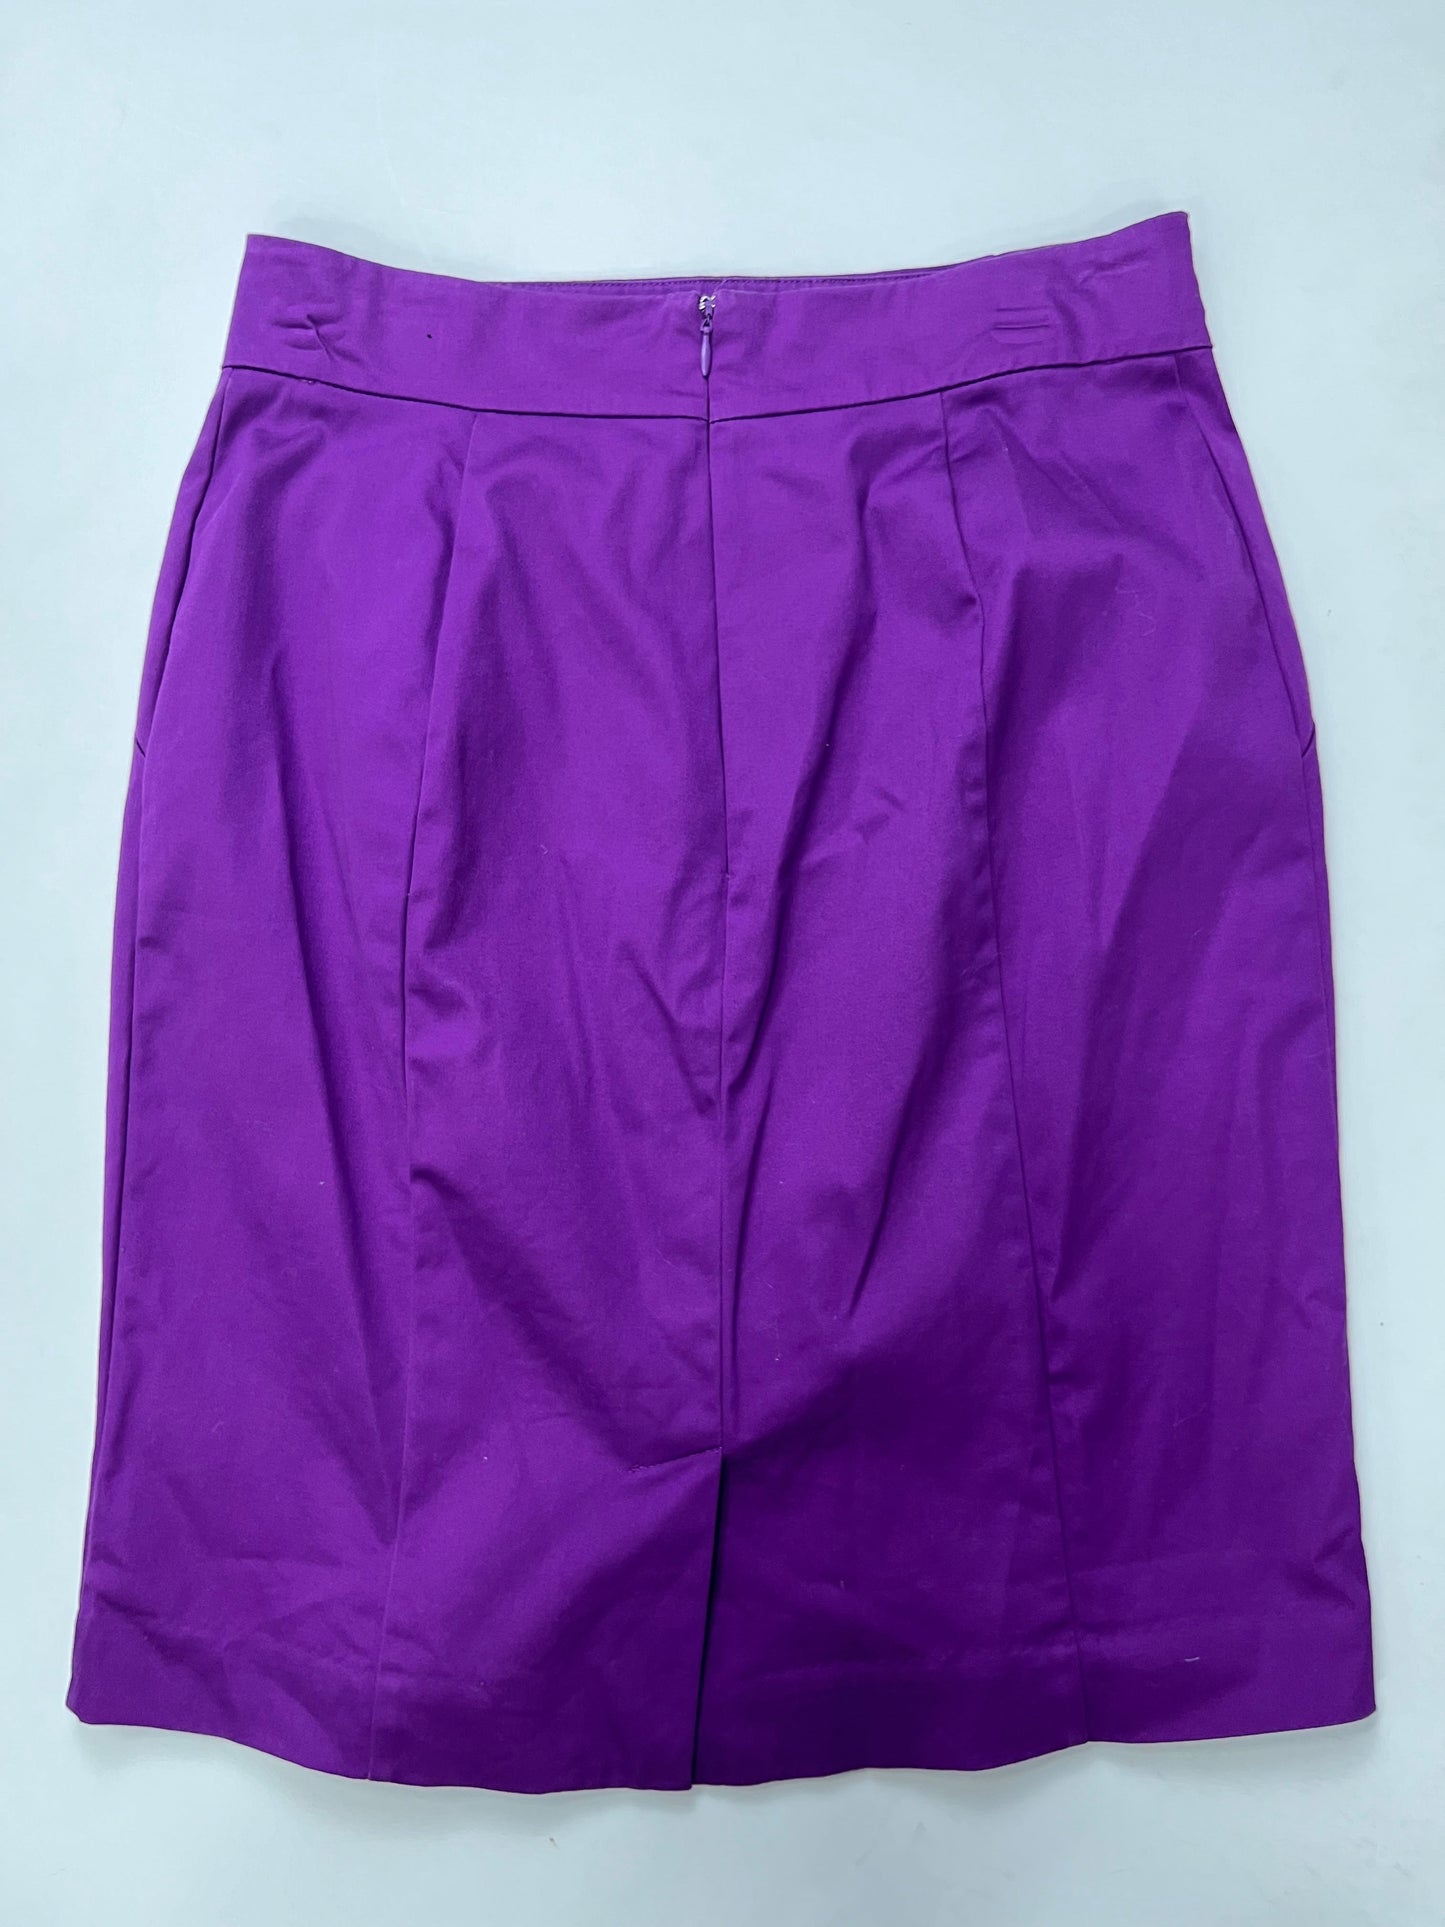 Skirt Maxi By Worthington  Size: 8